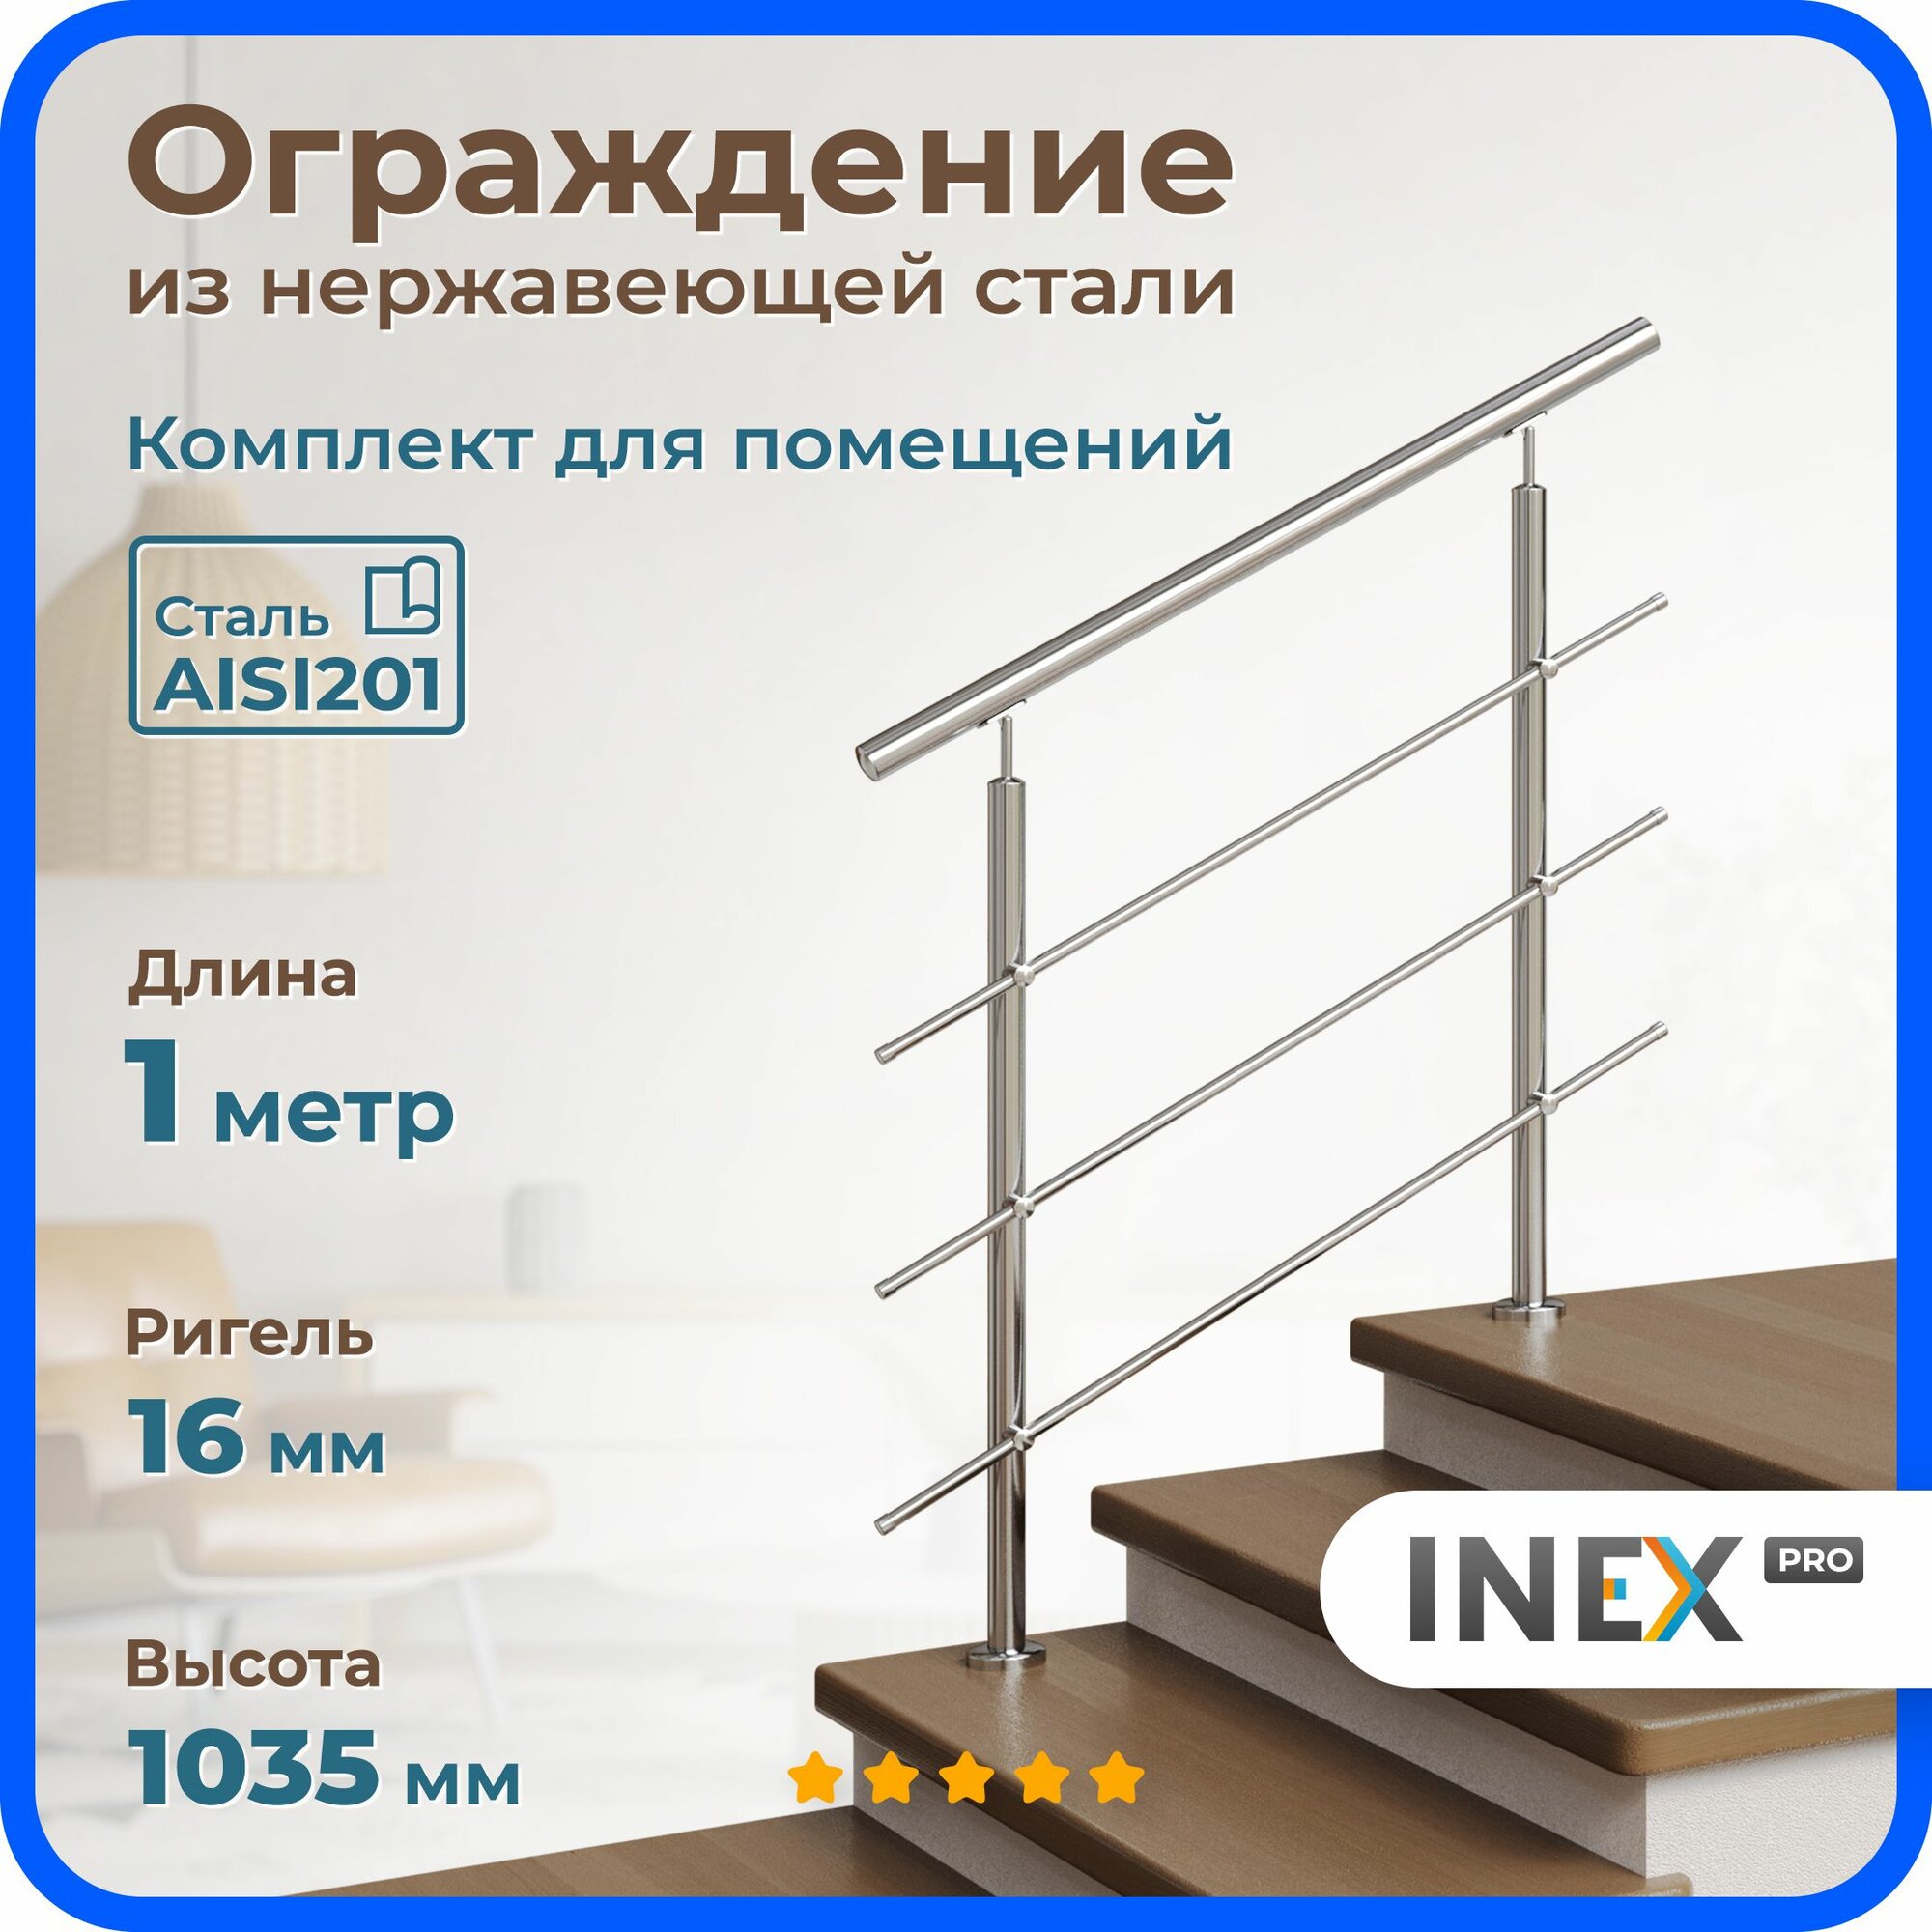 Перила для лестницы INEX Roun 1 метр, ригель 16 мм, ограждение из нержавейки для помещения, стали AISI201